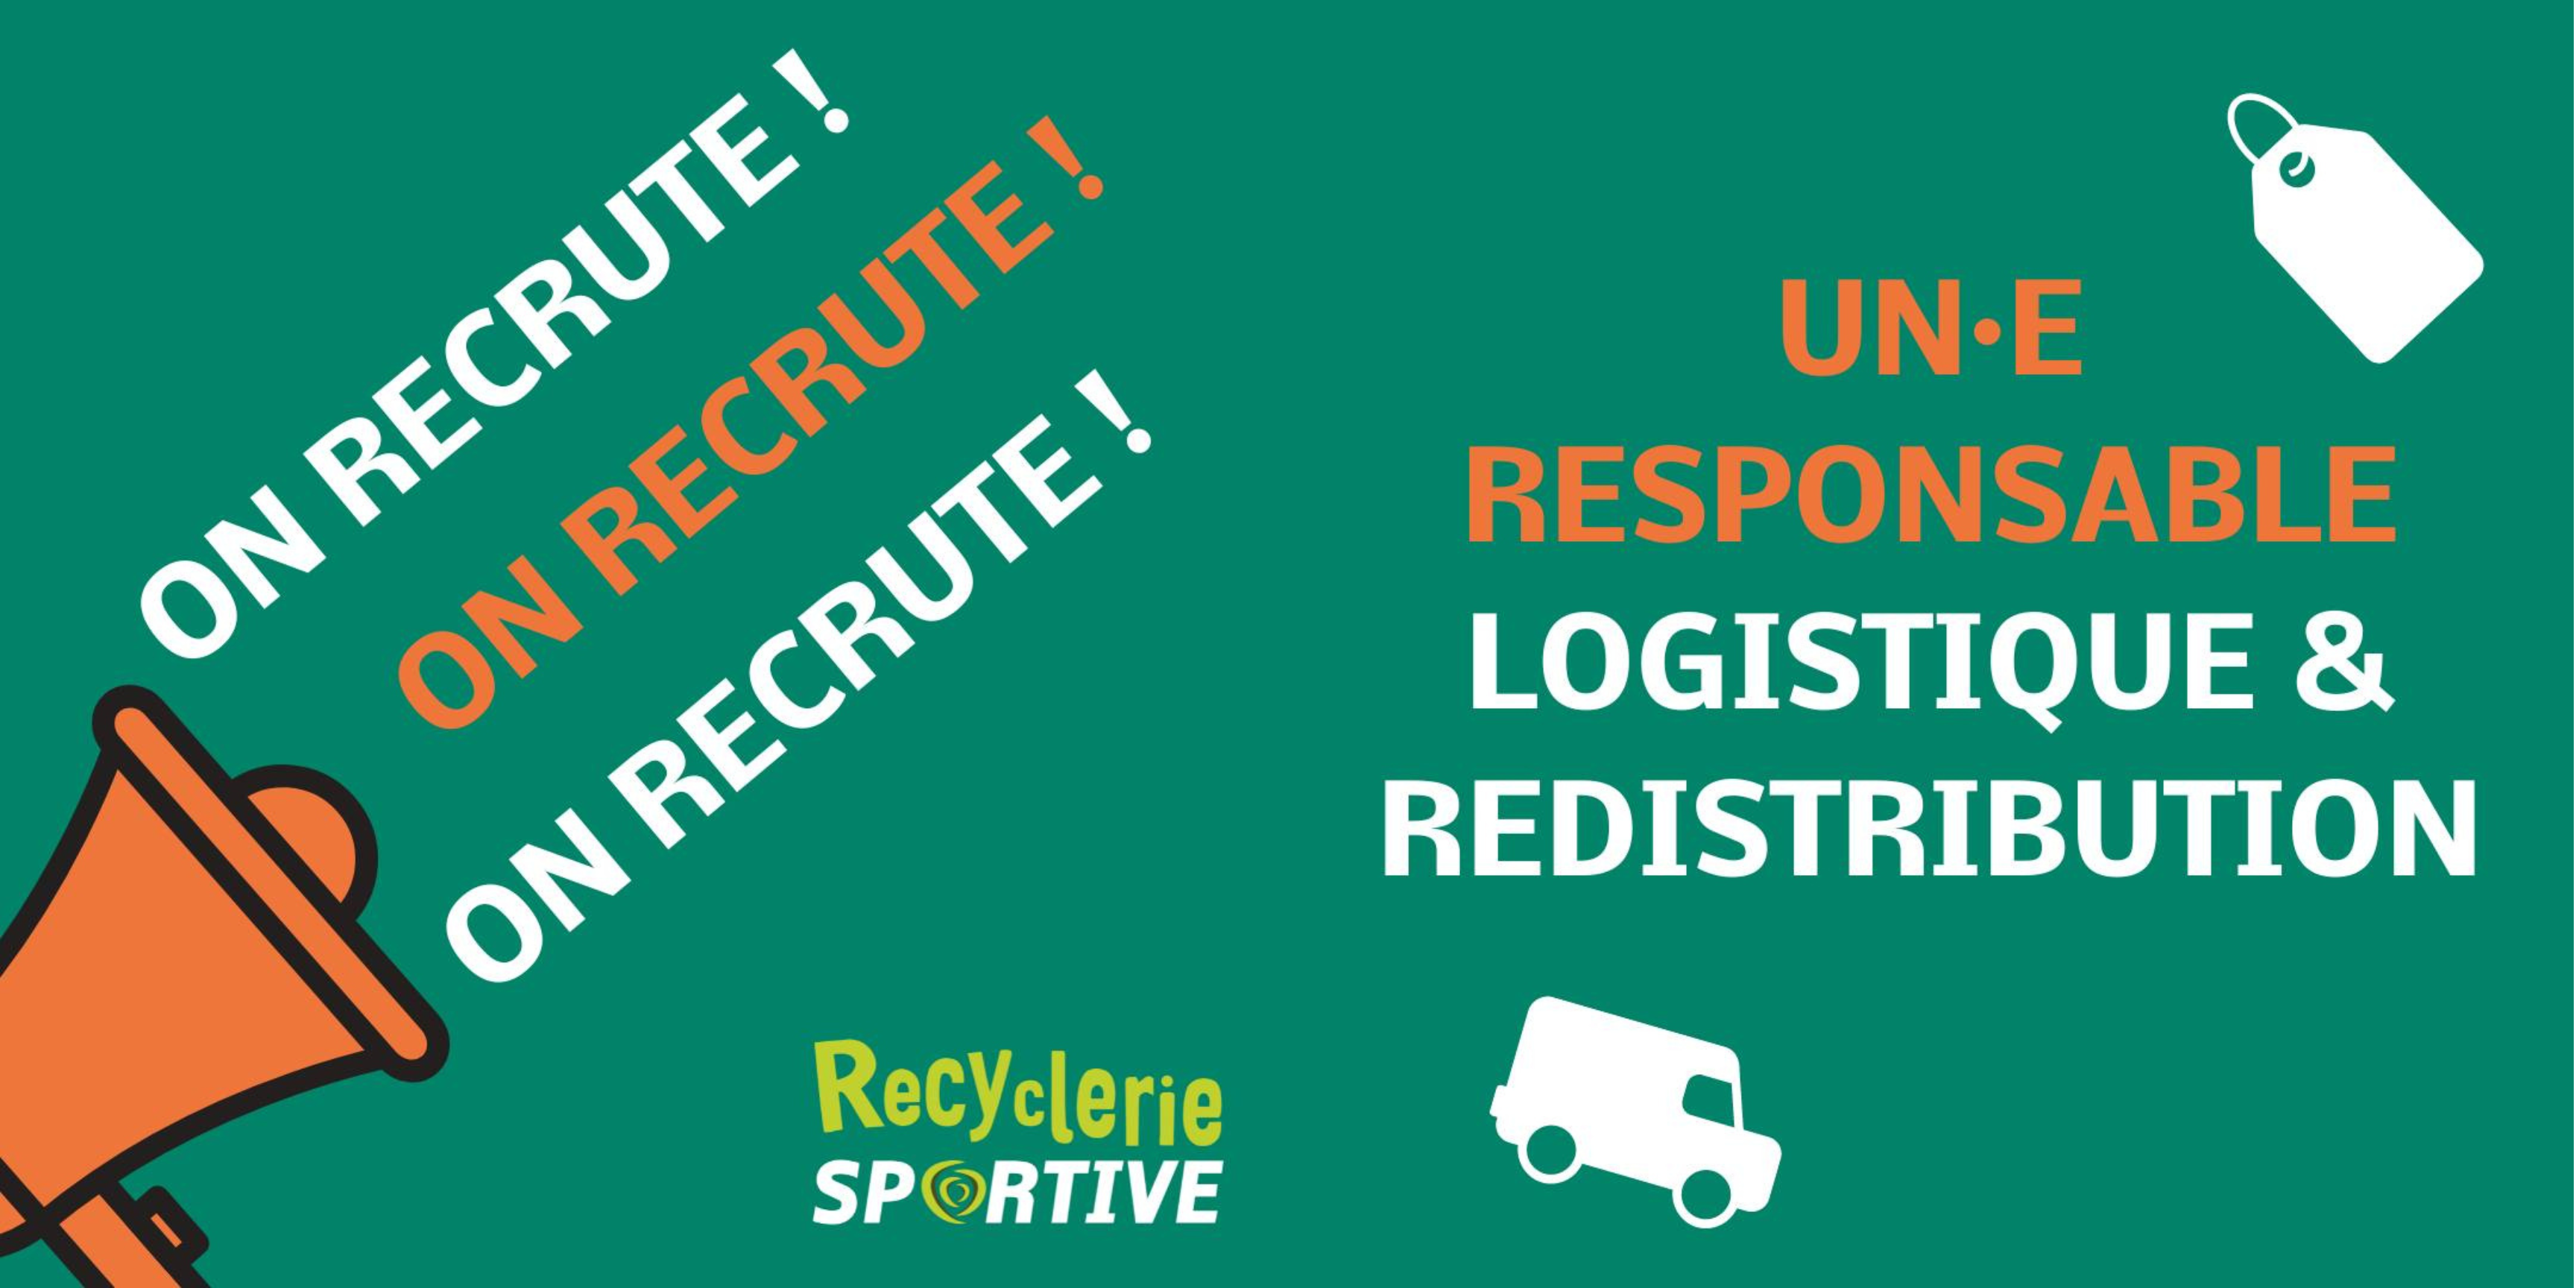 Le Recyclerie Sportive de Grenoble recherche un-e responsable logistique et redistribution